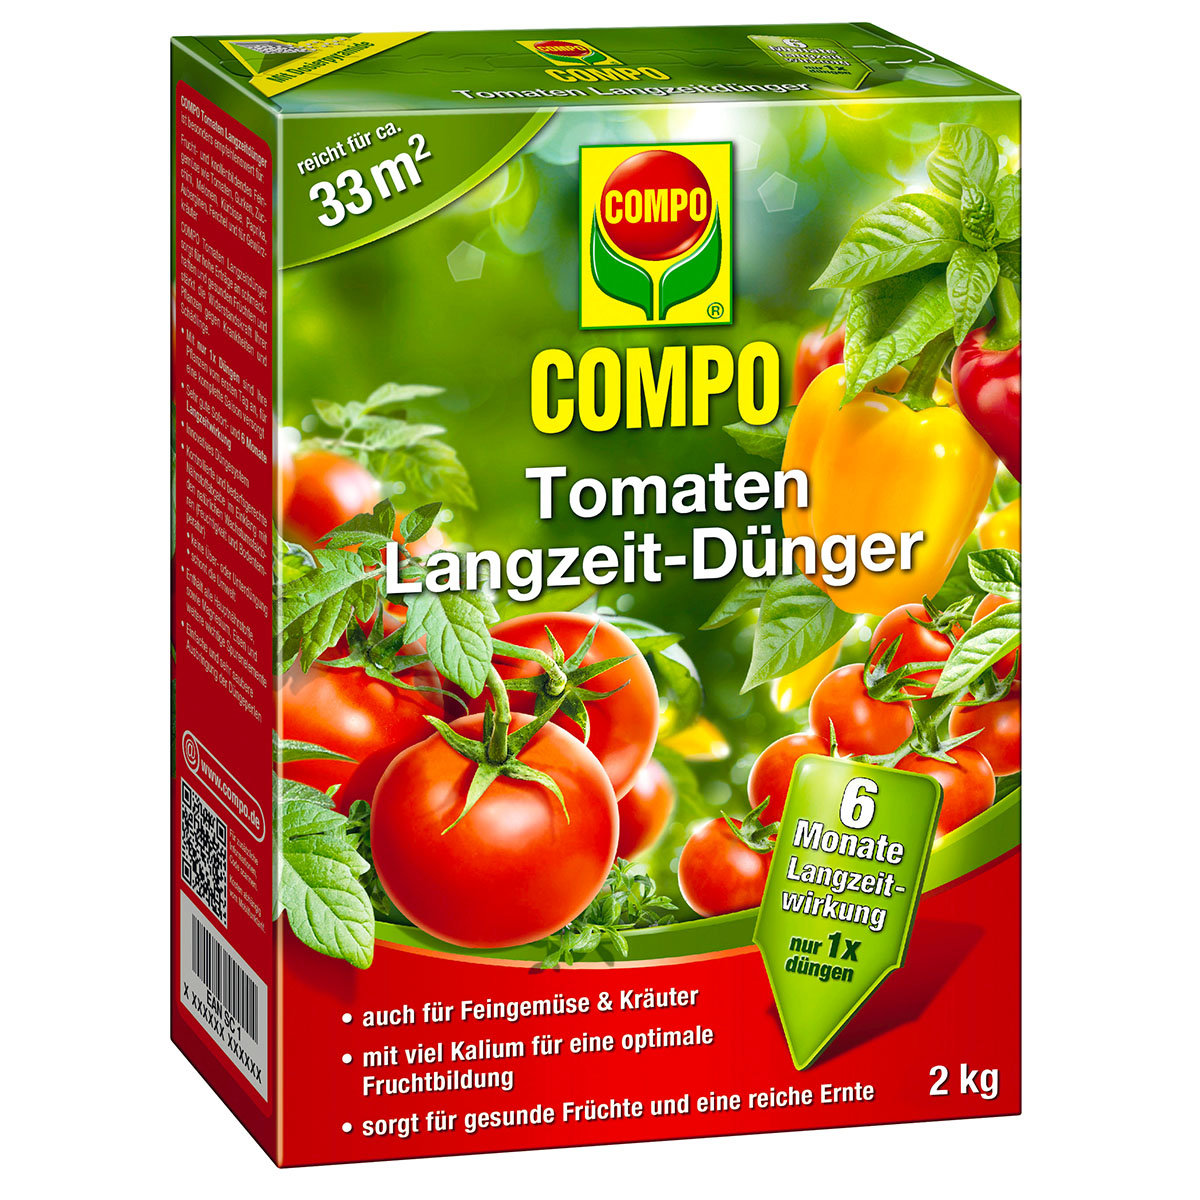 Tomaten Langzeit-Dünger, 2 kg
